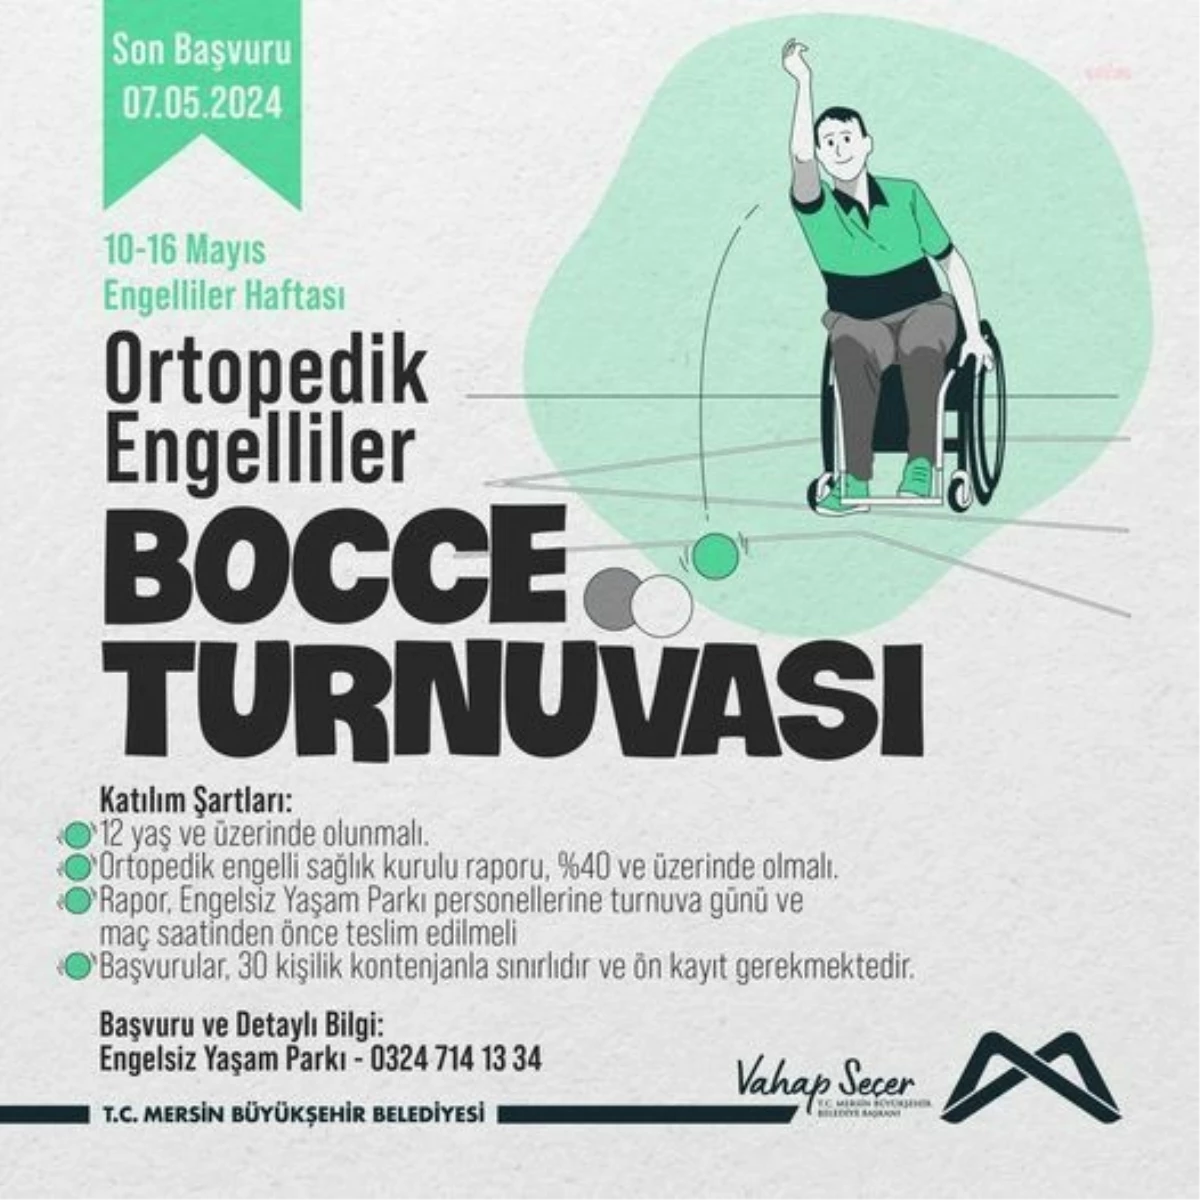 Mersin Büyükşehir Belediyesi Engelliler Haftası için Bocce Turnuvası Düzenliyor